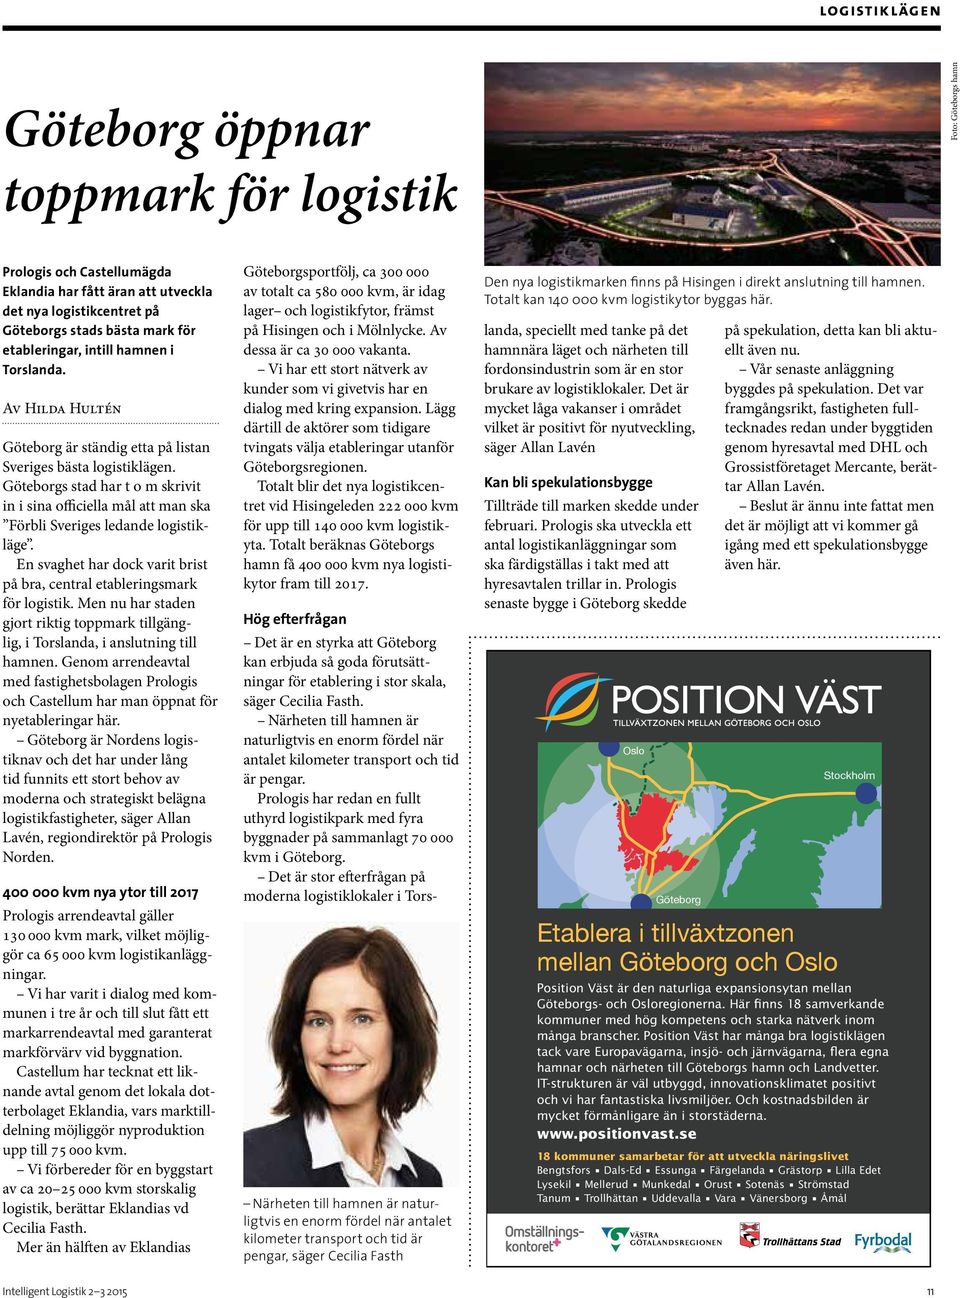 Prologis har redan en fullt uthyrd logistikpark med fyra byggnader på sammanlagt 70 000 kvm i Göteborg.